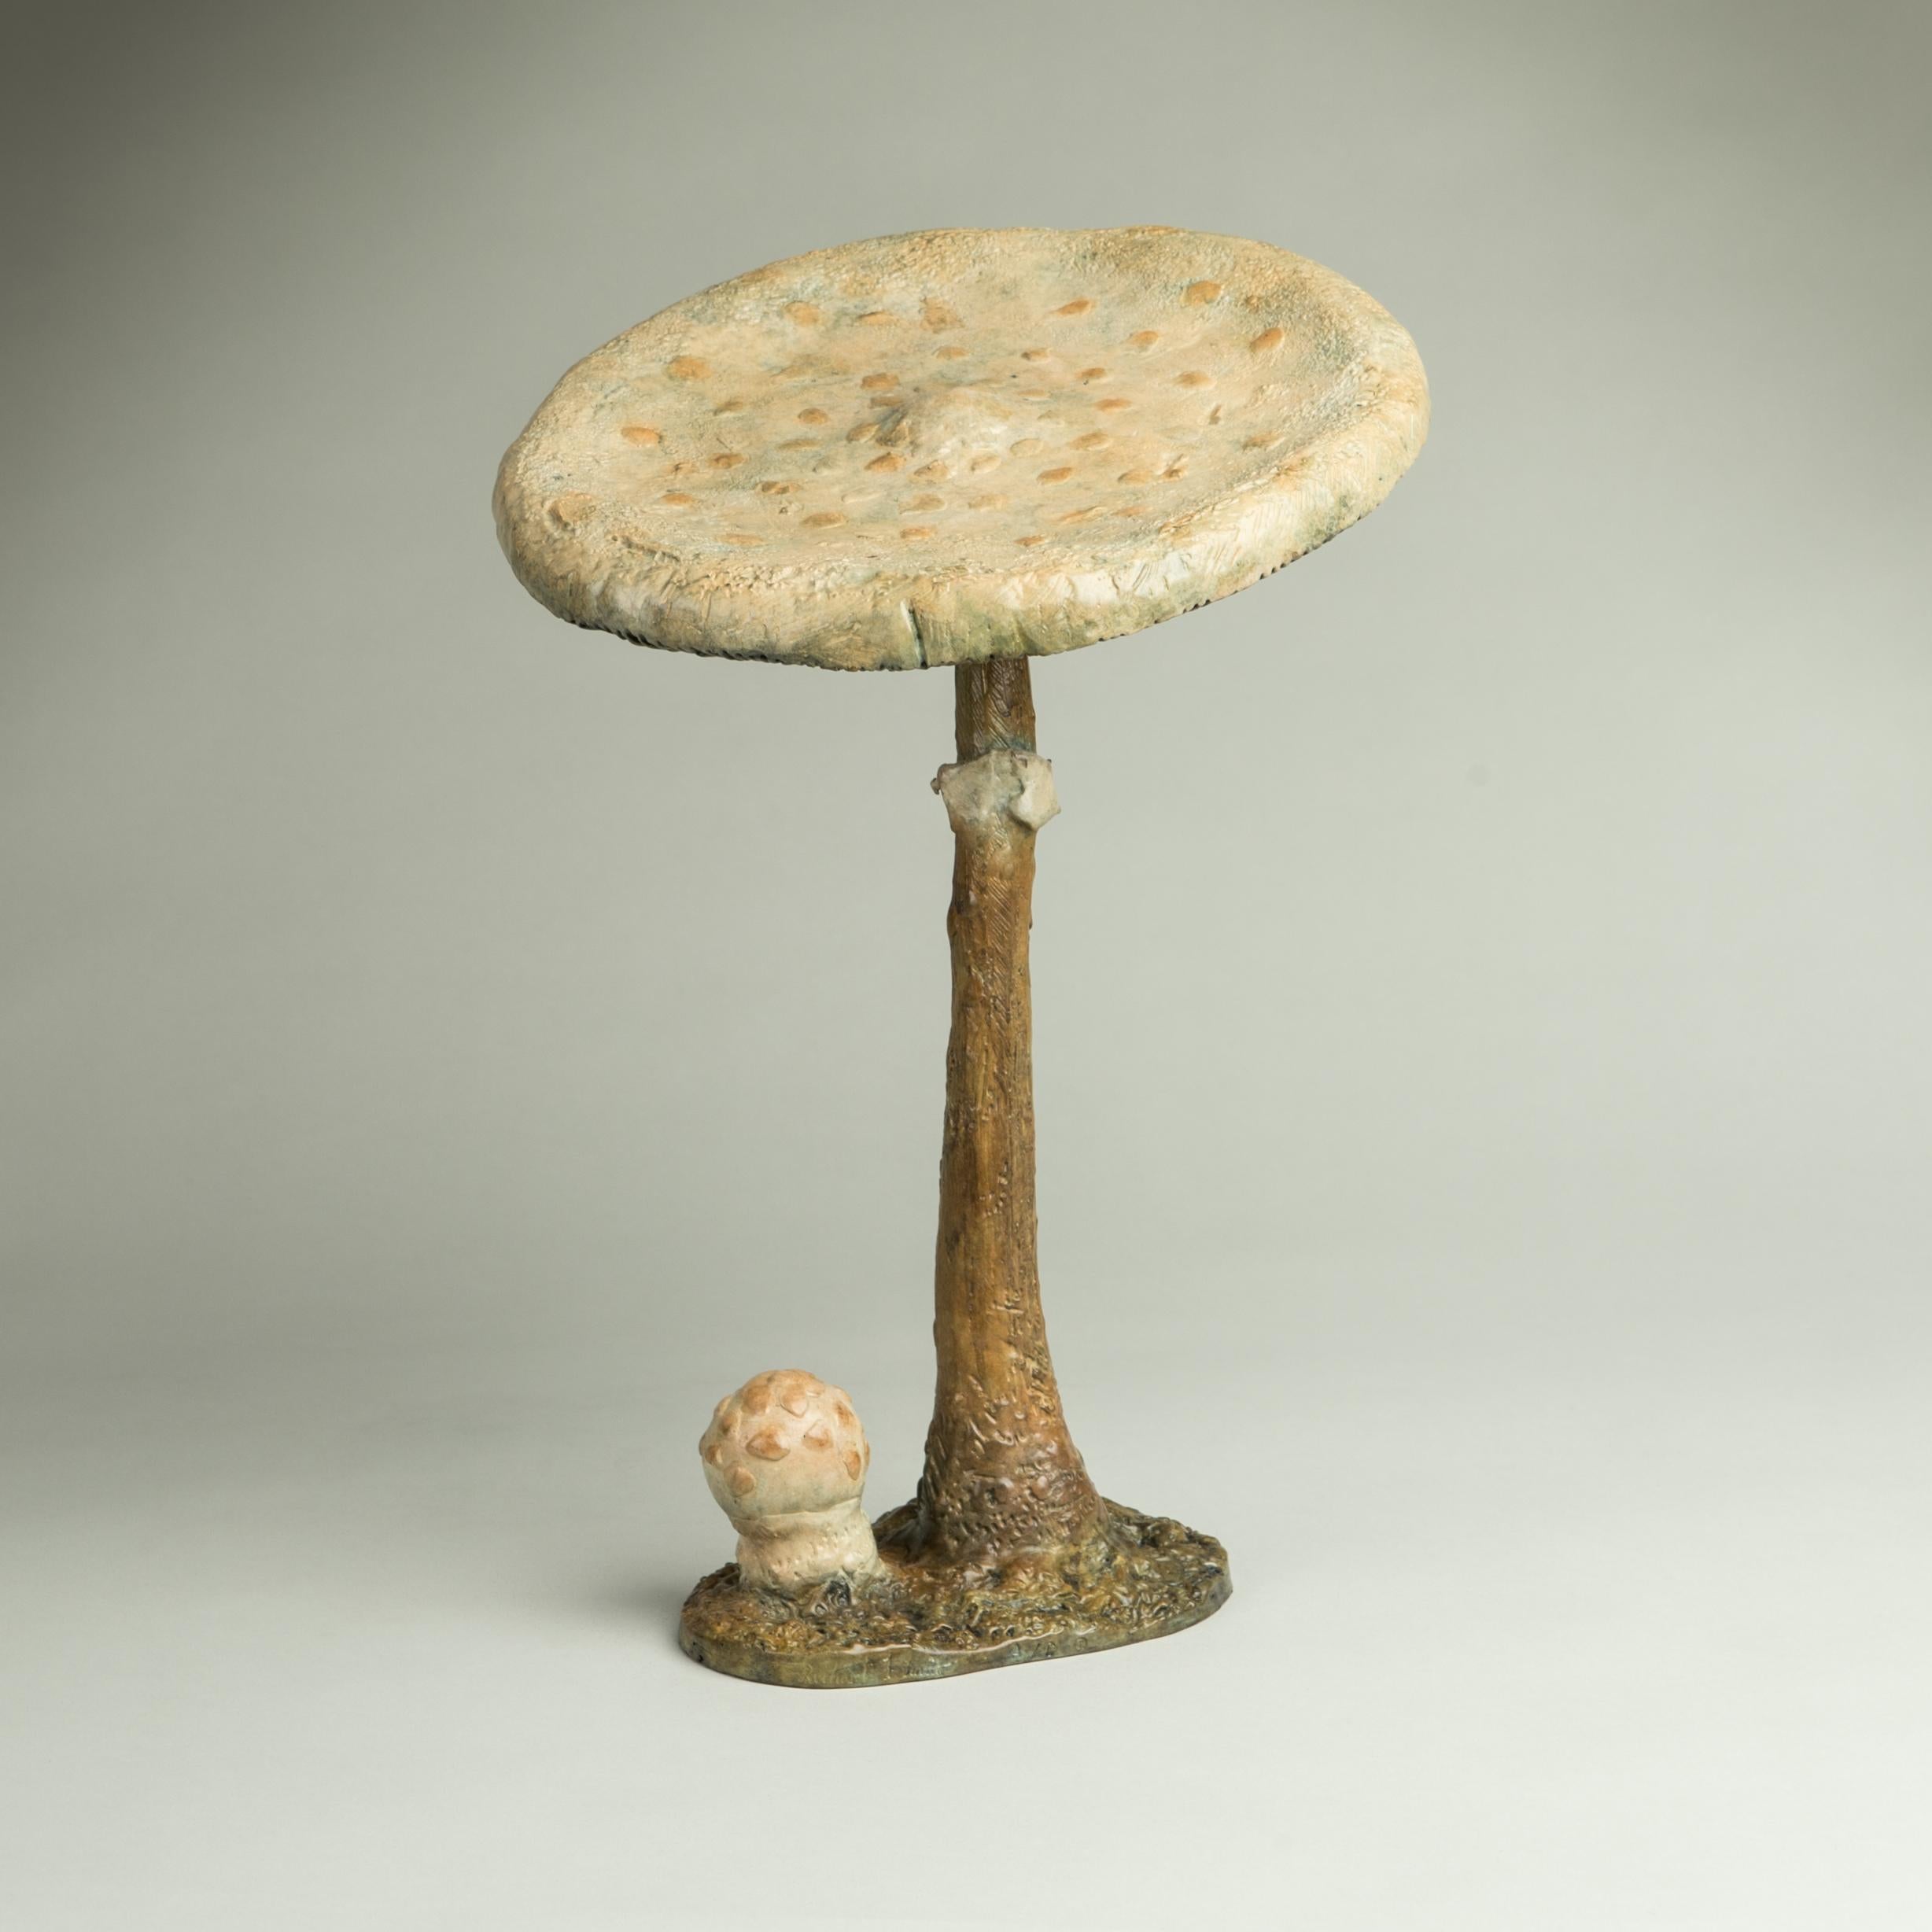 Still-Life Sculpture Richard Smith - « Parasol Mushroom », sculpture contemporaine en bronze d'un champignon, faune sauvage